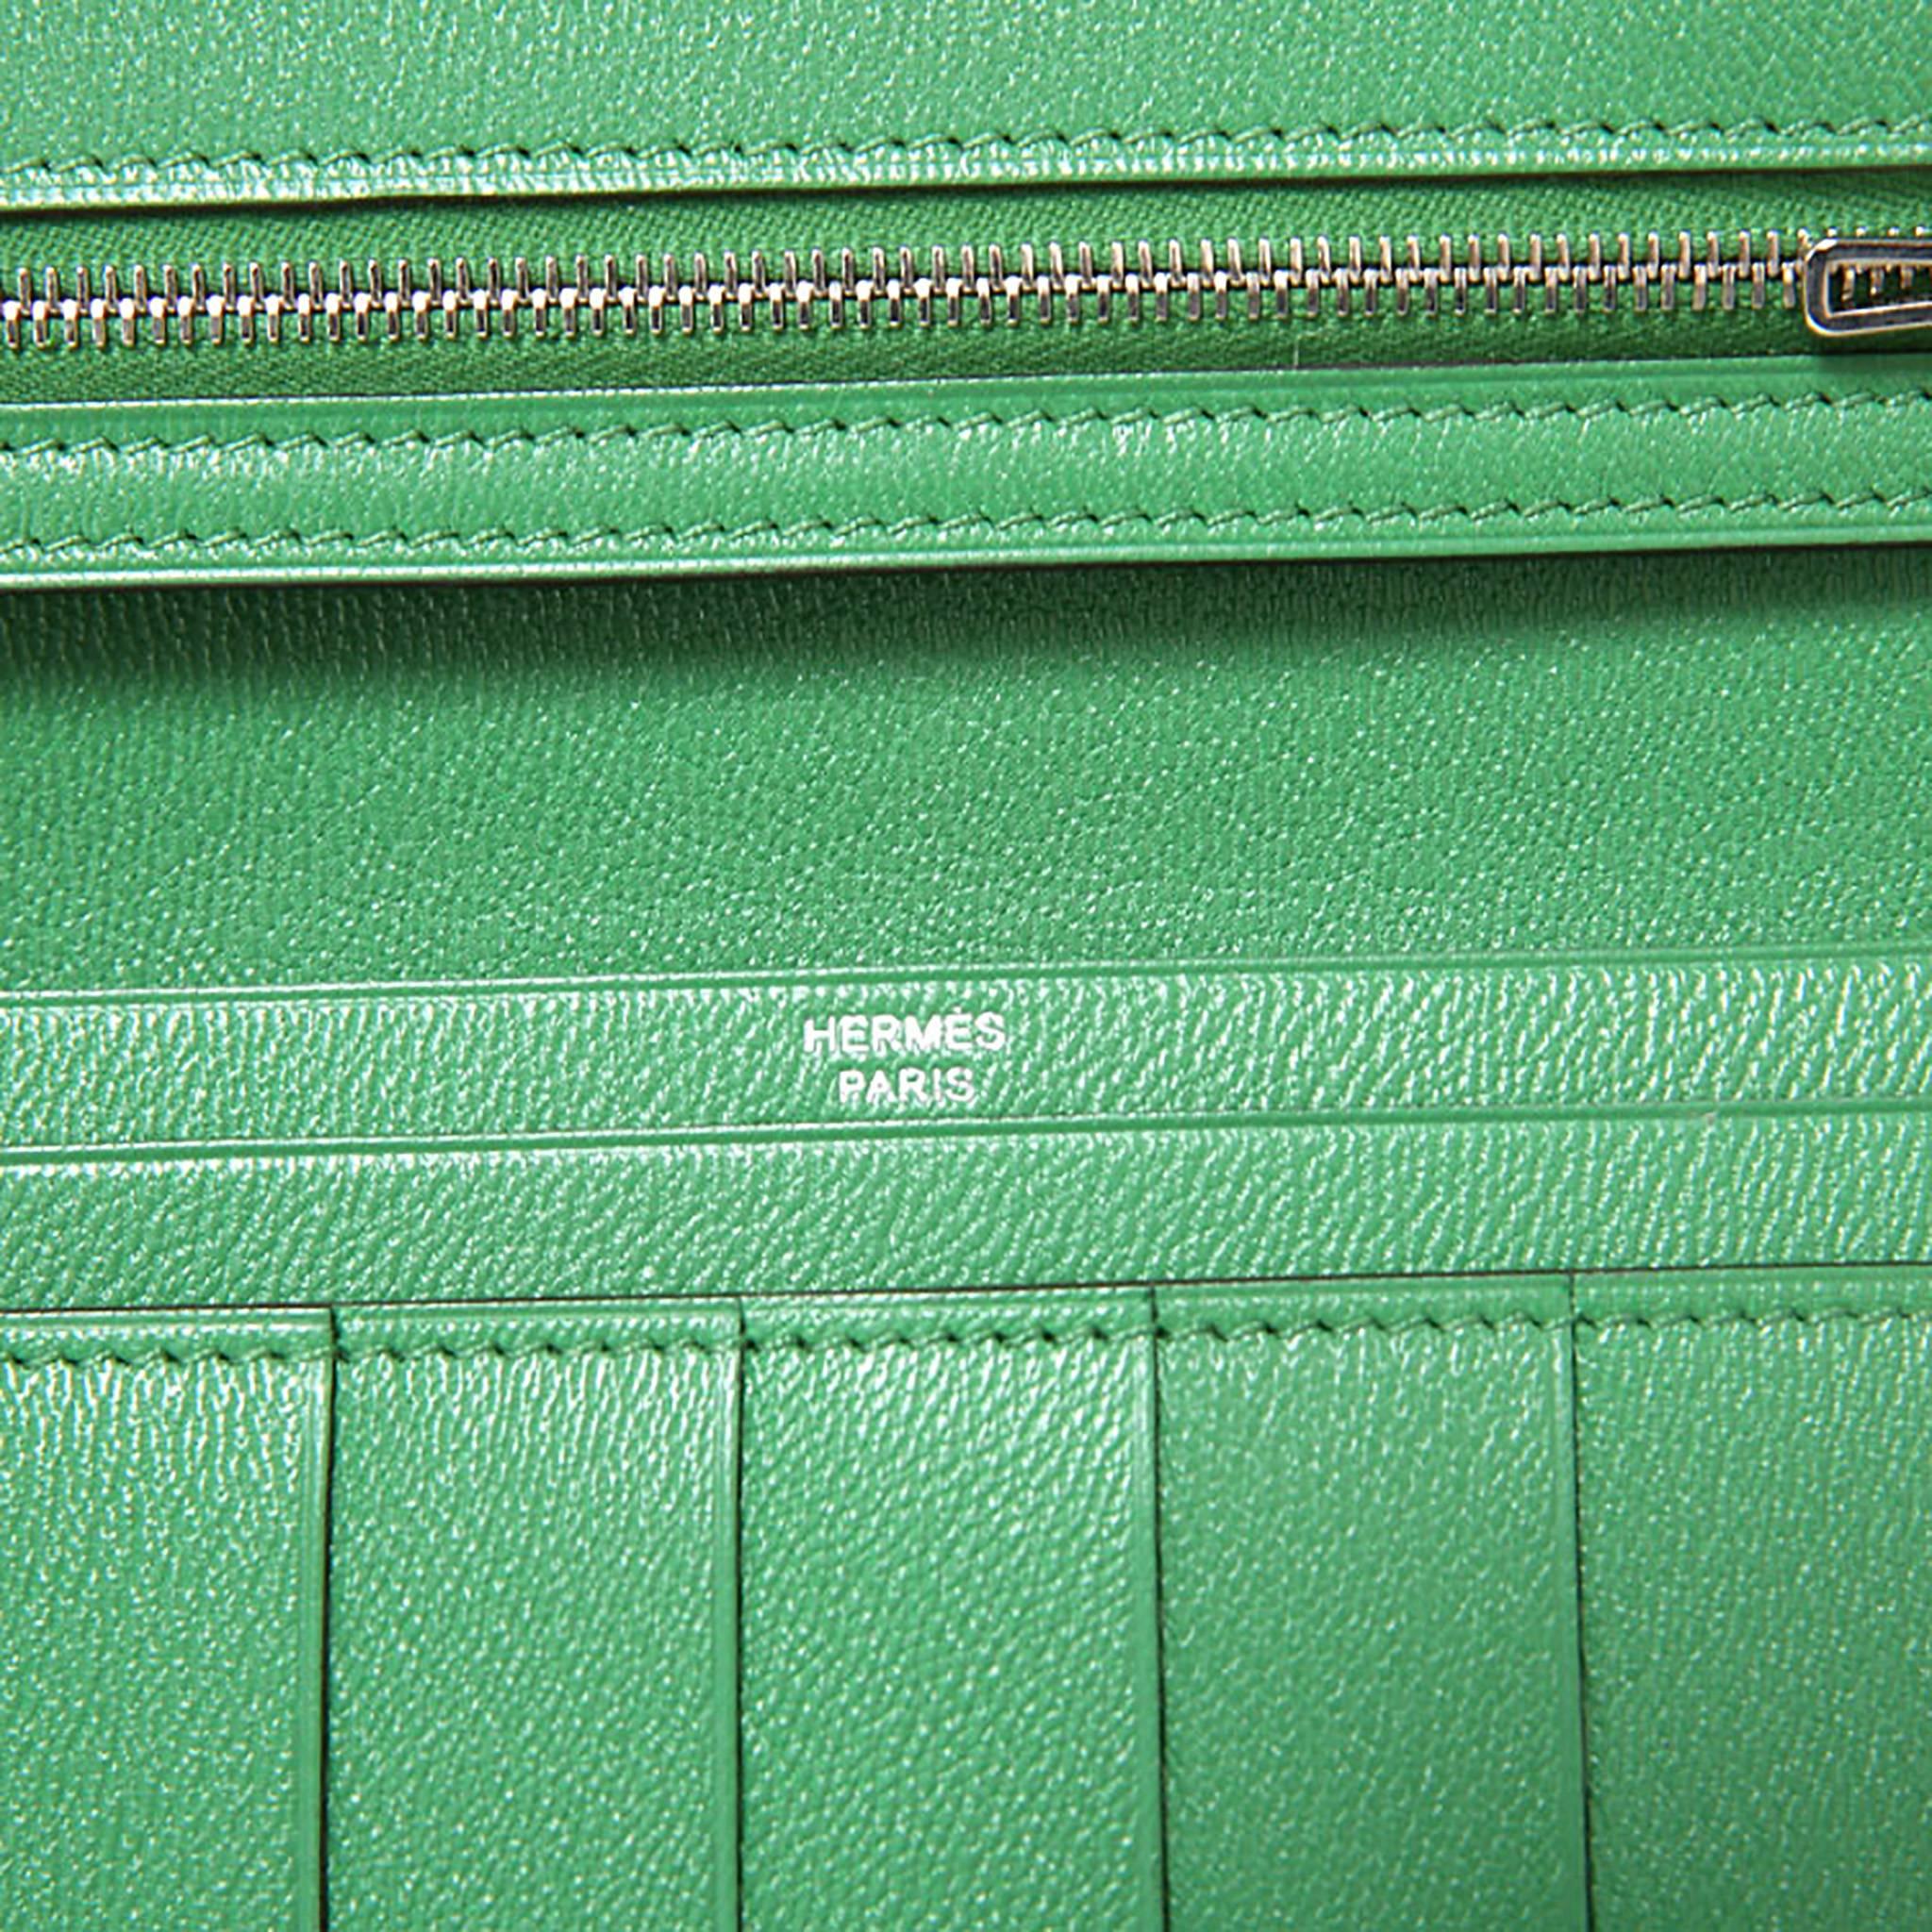 Hermes Bearn Wallet Crocodile Fight Lizard Skin Green / Ombre Color PHW 2